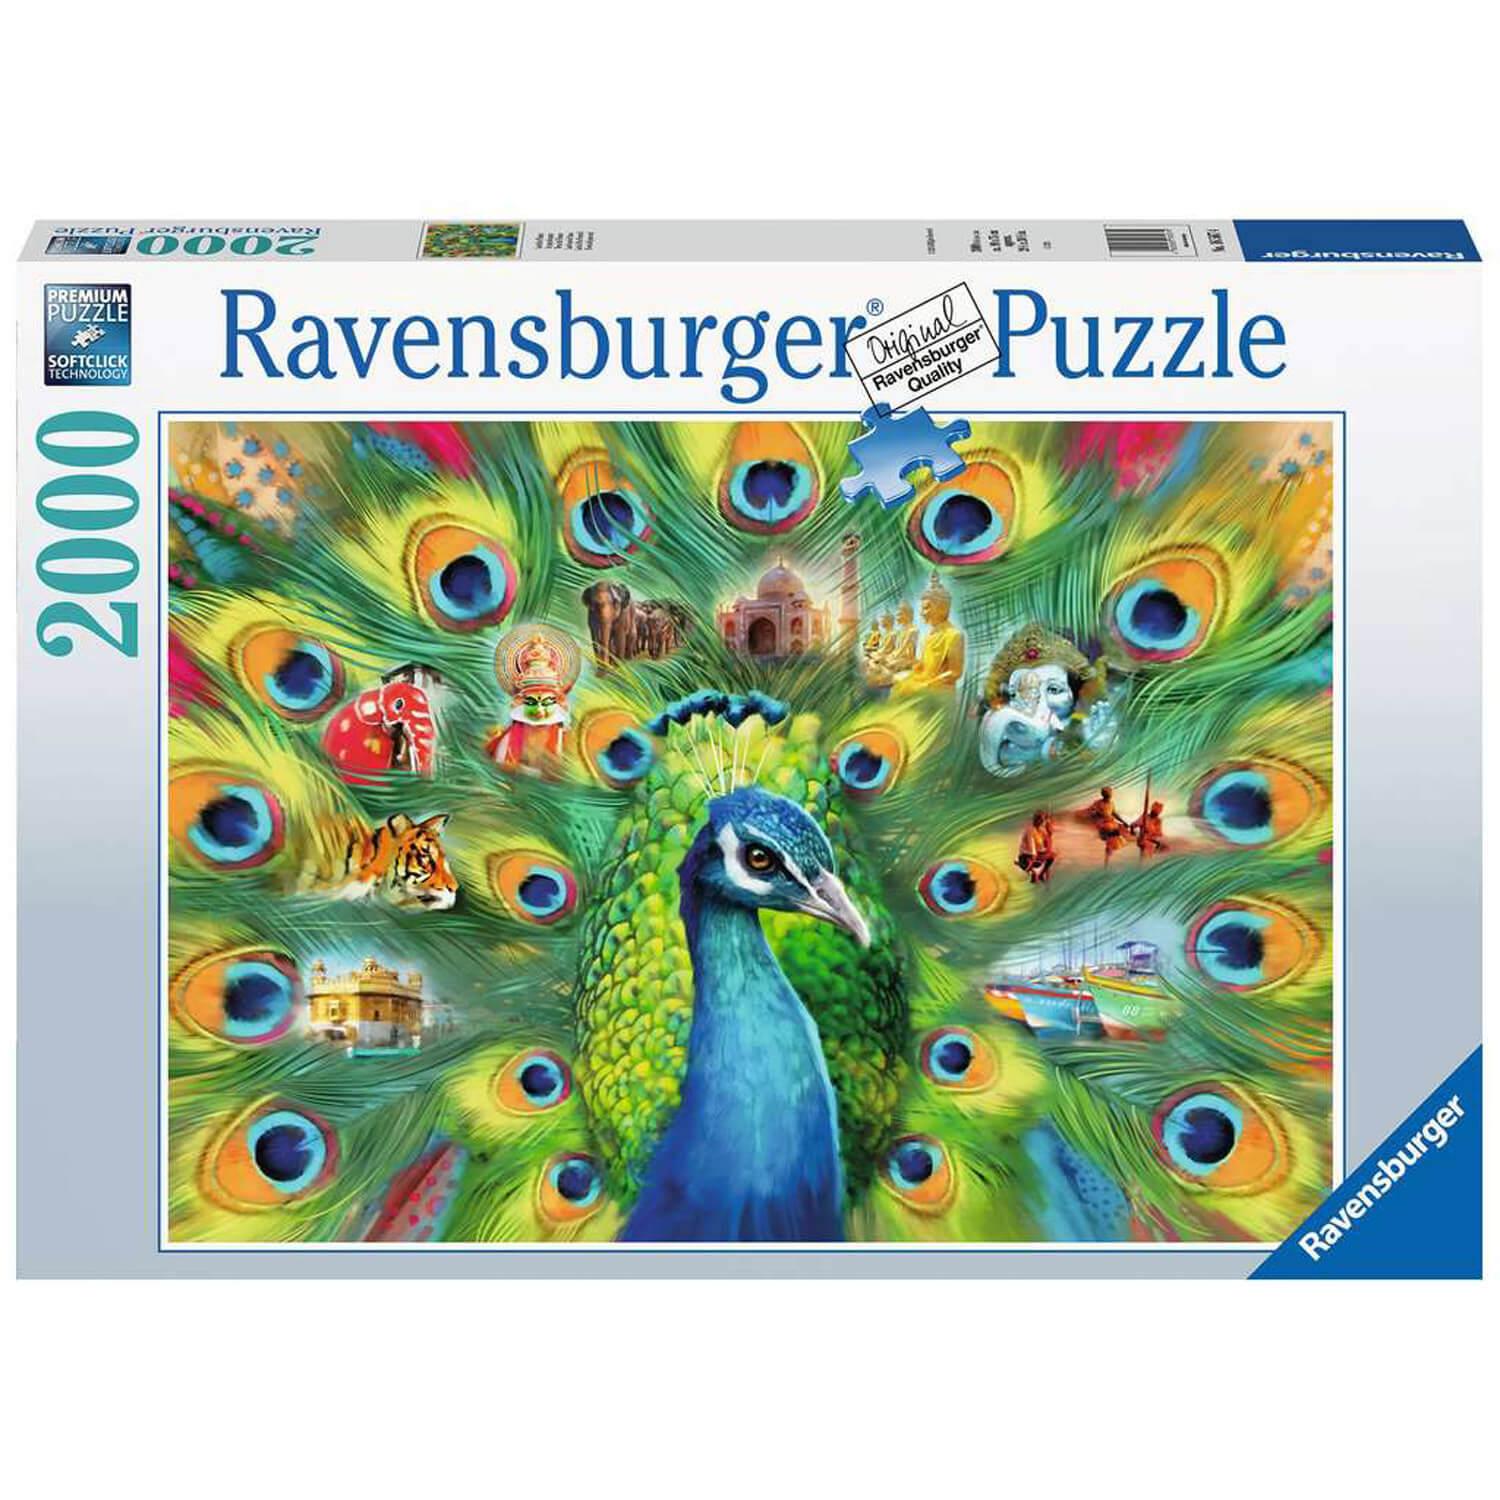 Puzzle 2000 pièces - CLEMENTONI - La jungle - Animaux - Adulte - Coloris  Unique